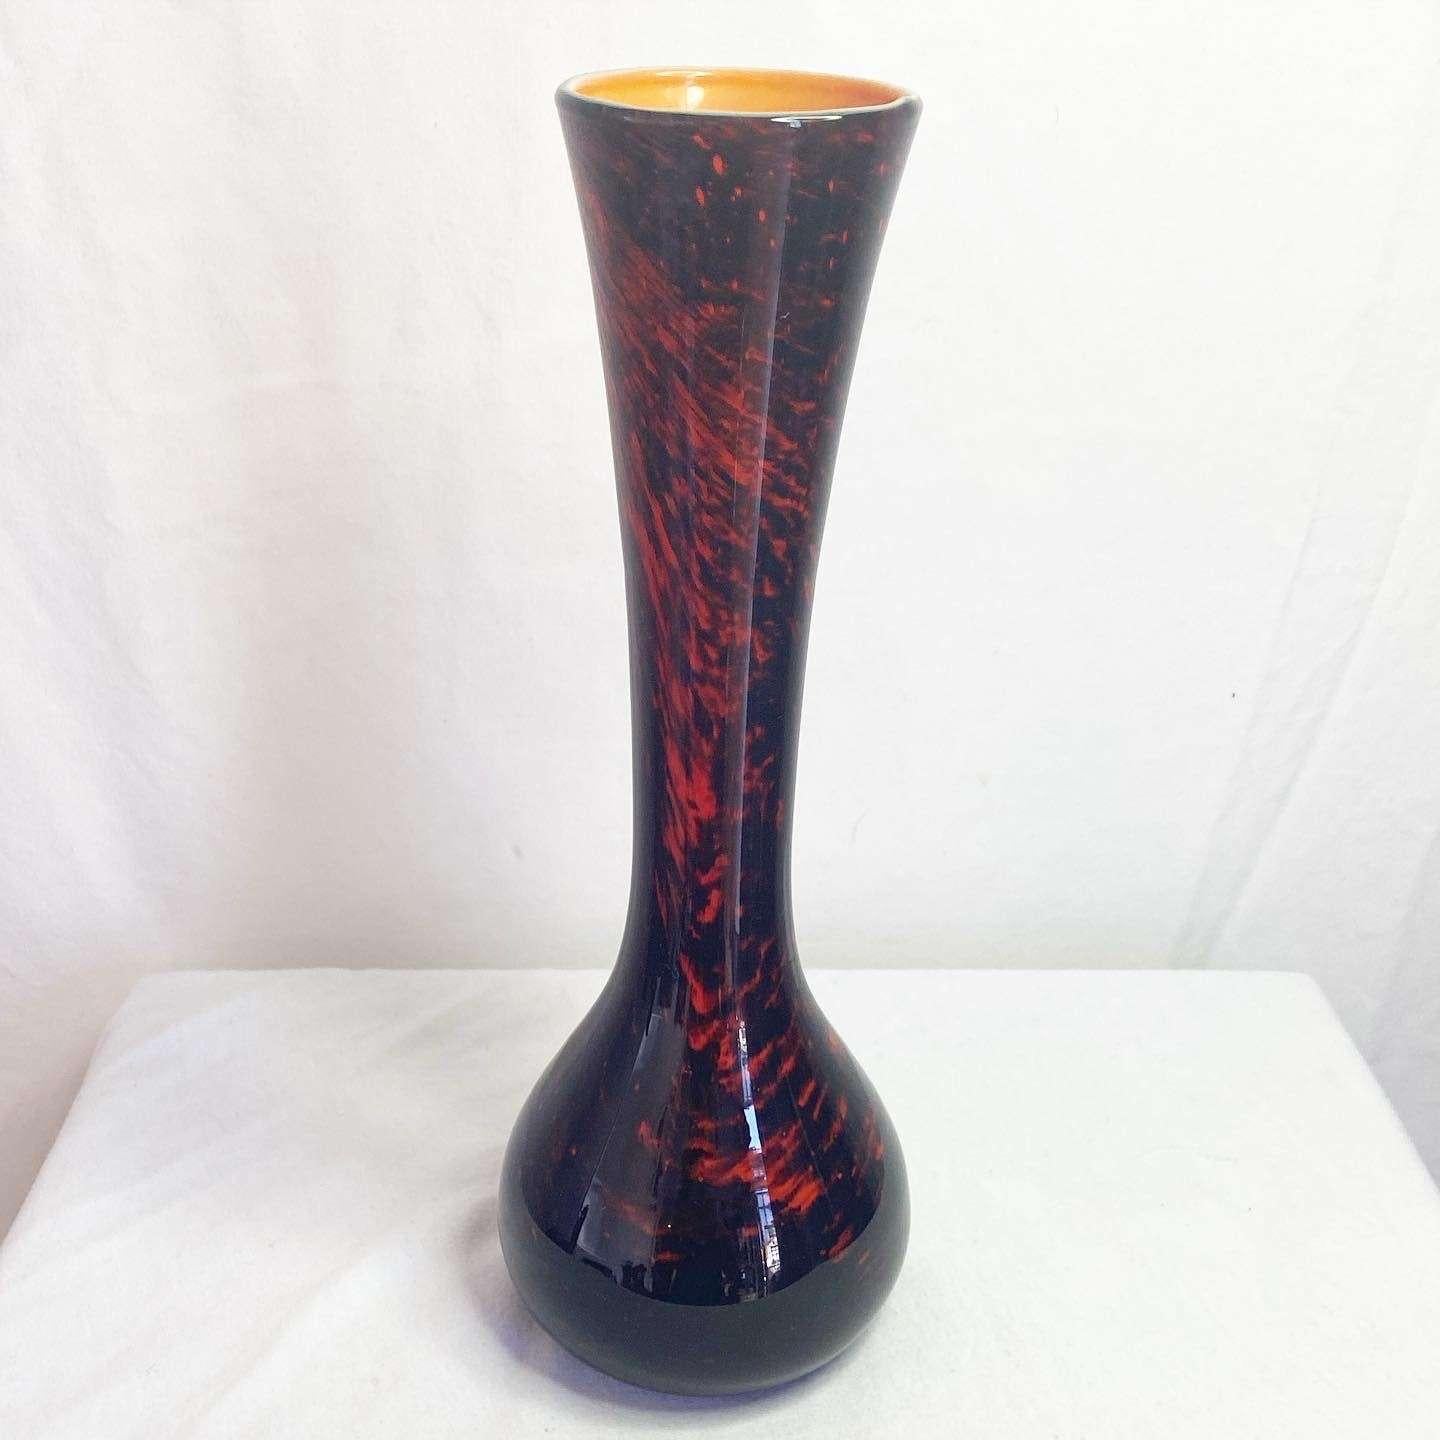 Postmodern Vintage Black Red and Orange Ceramic Vase